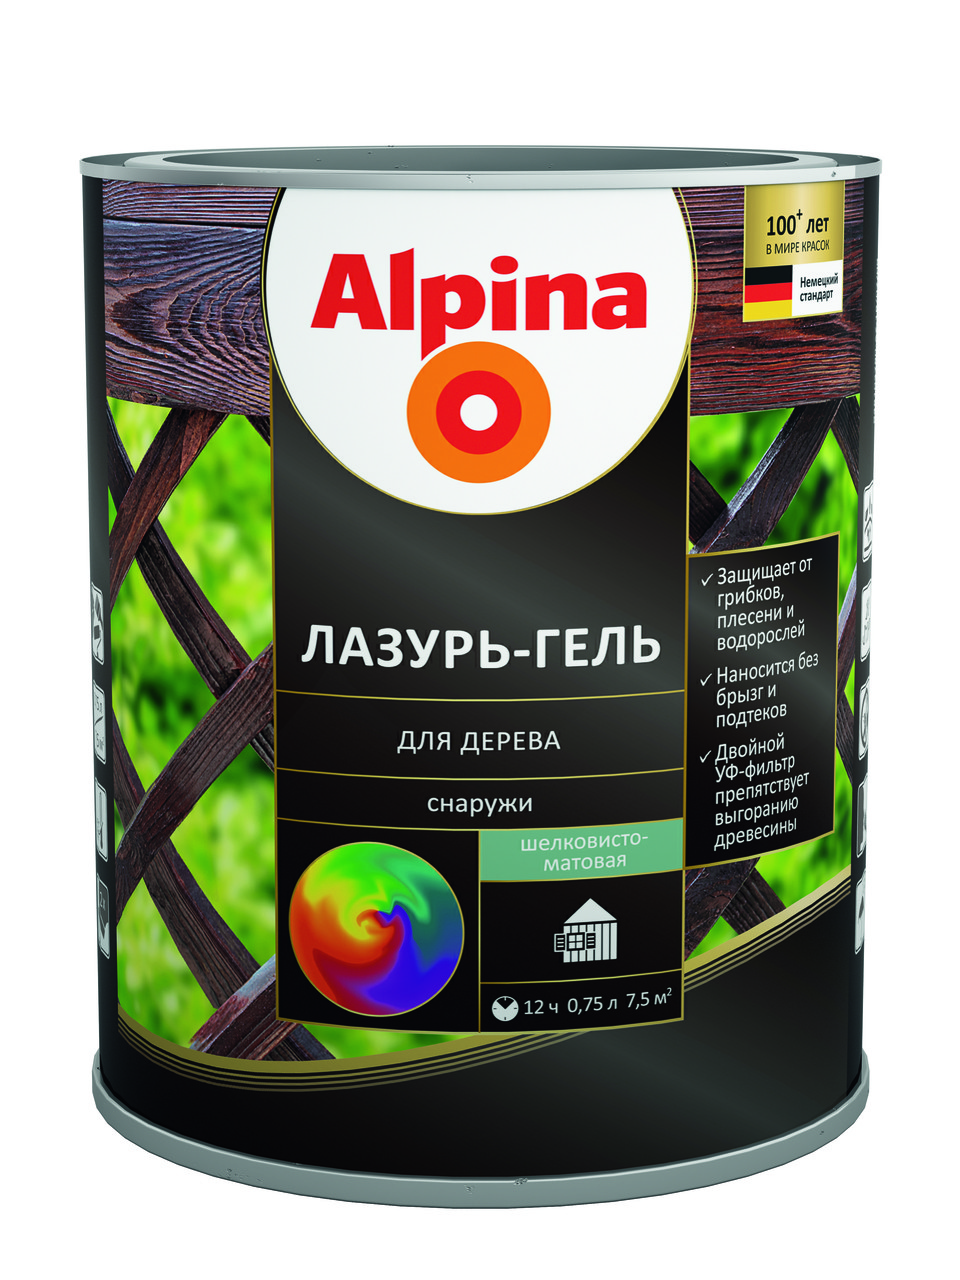 Alpina Лазурь-гель для дерева Бесцветная  2.5 л.